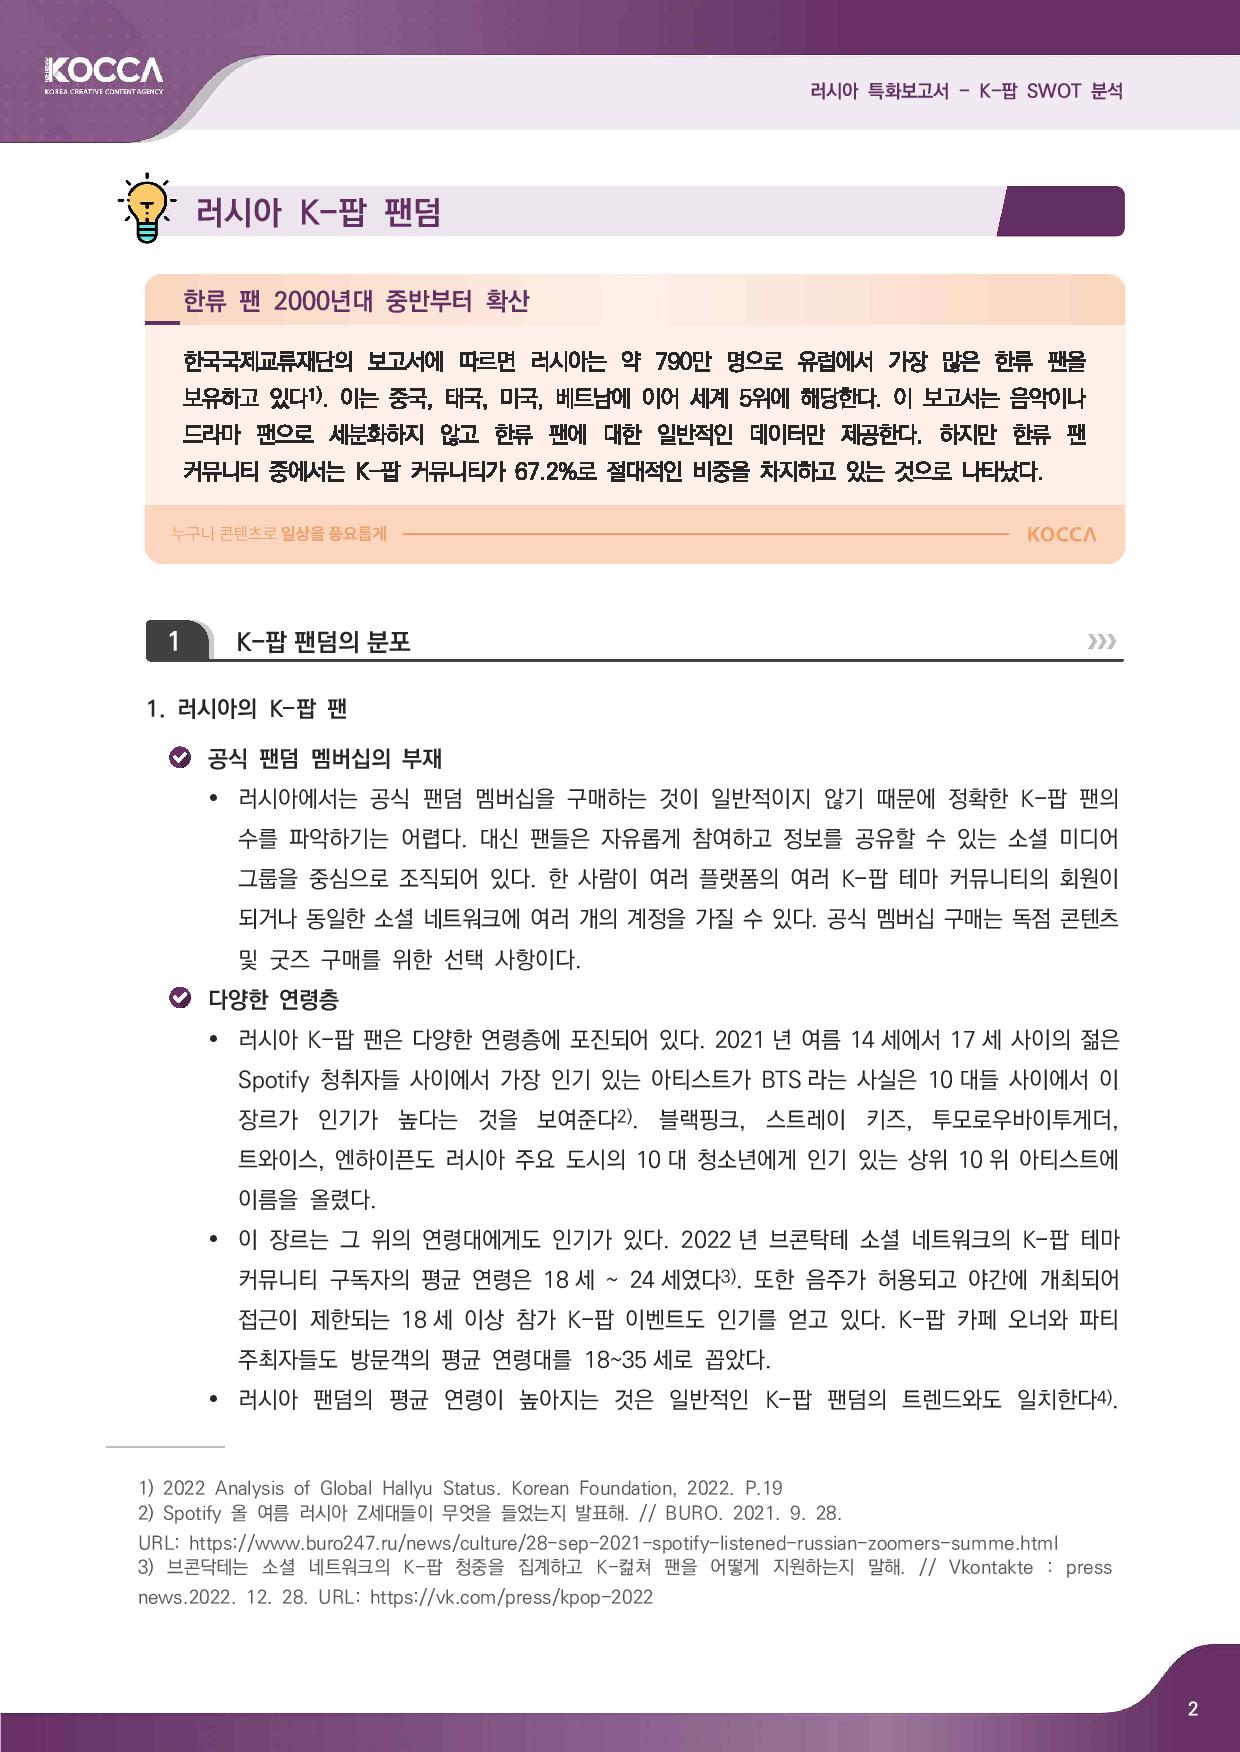 2. 러시아 특화보고서_K-pop SWOT 분석 (3)-page-004.jpg